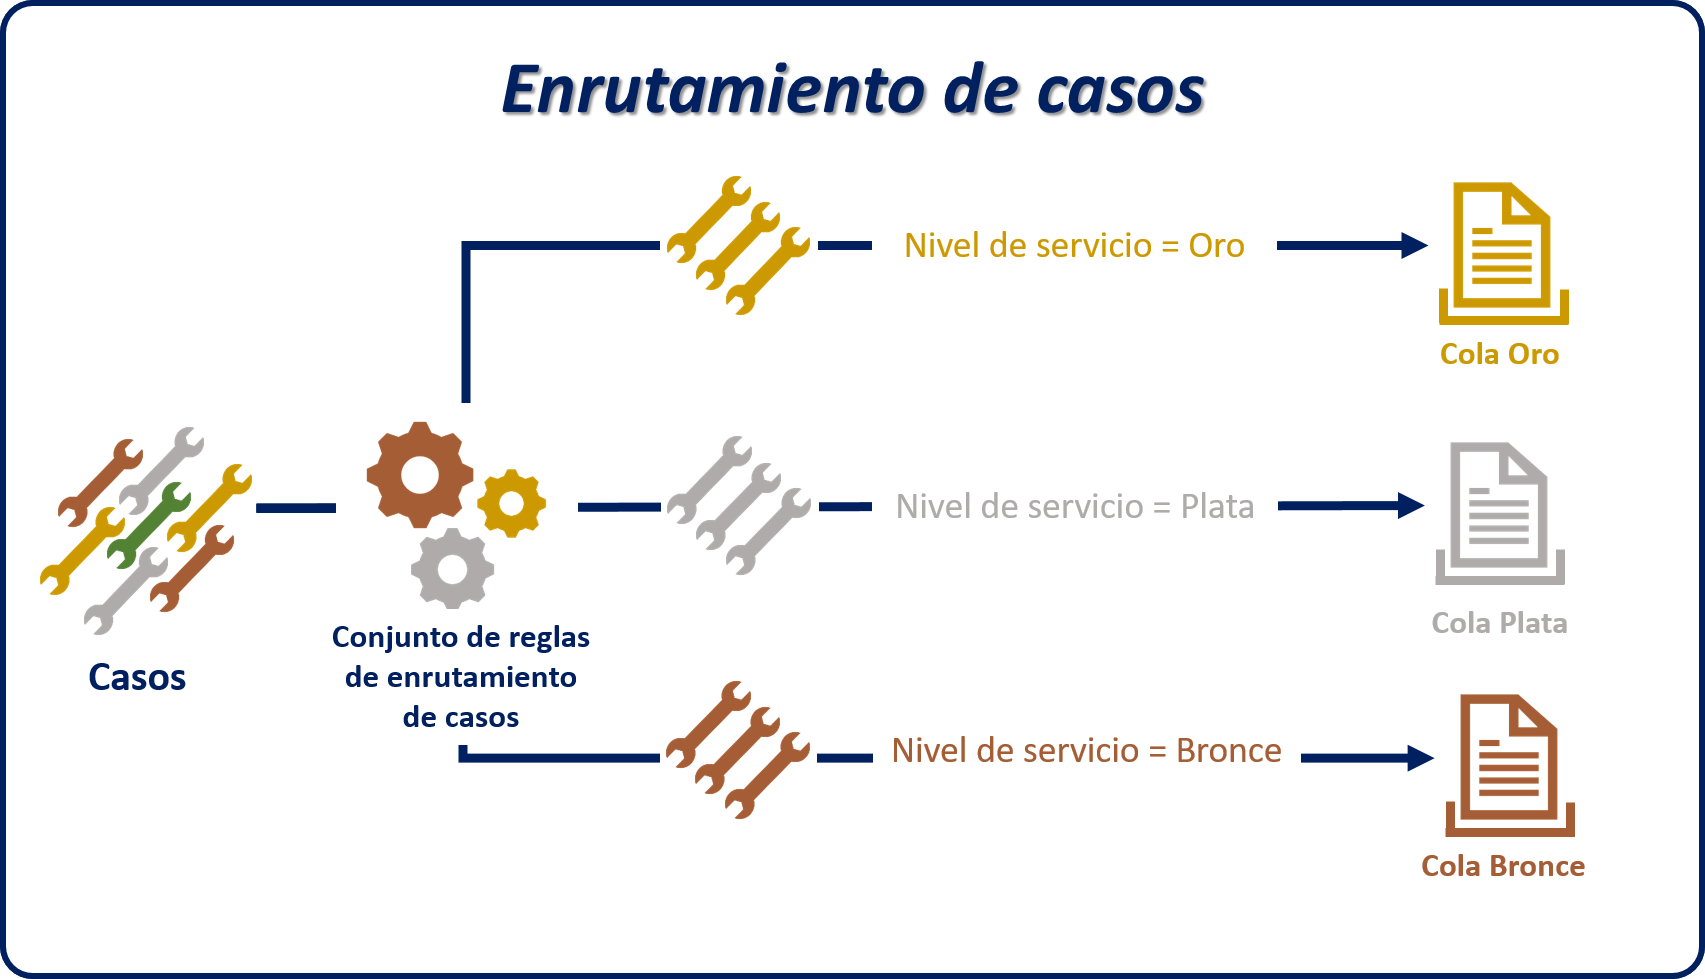 Ejemplo de un diagrama de Enrutamiento de casos que usa conjuntos de reglas y niveles de servicio.